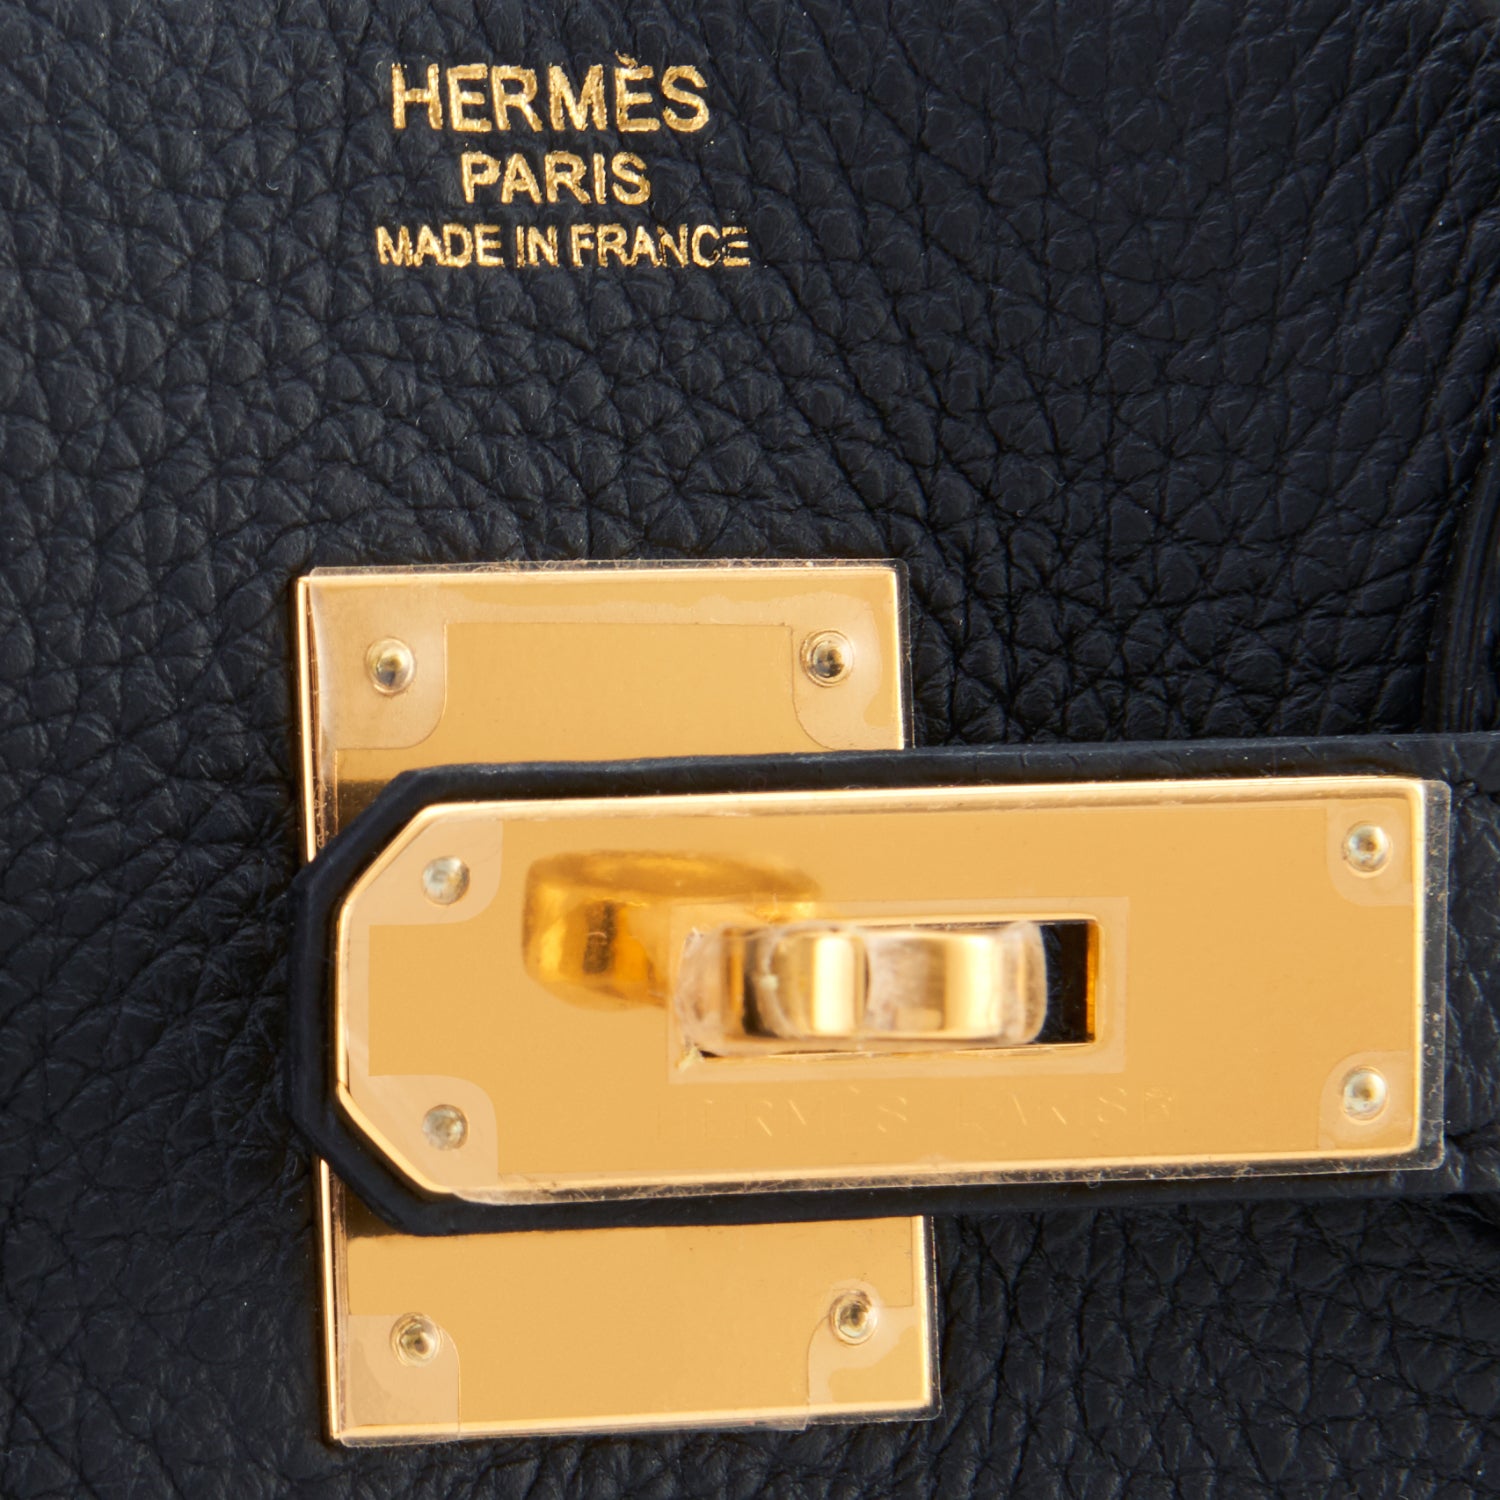 Hermes Black Togo Leather Gold Hardware Birkin 30 Bag Hermes